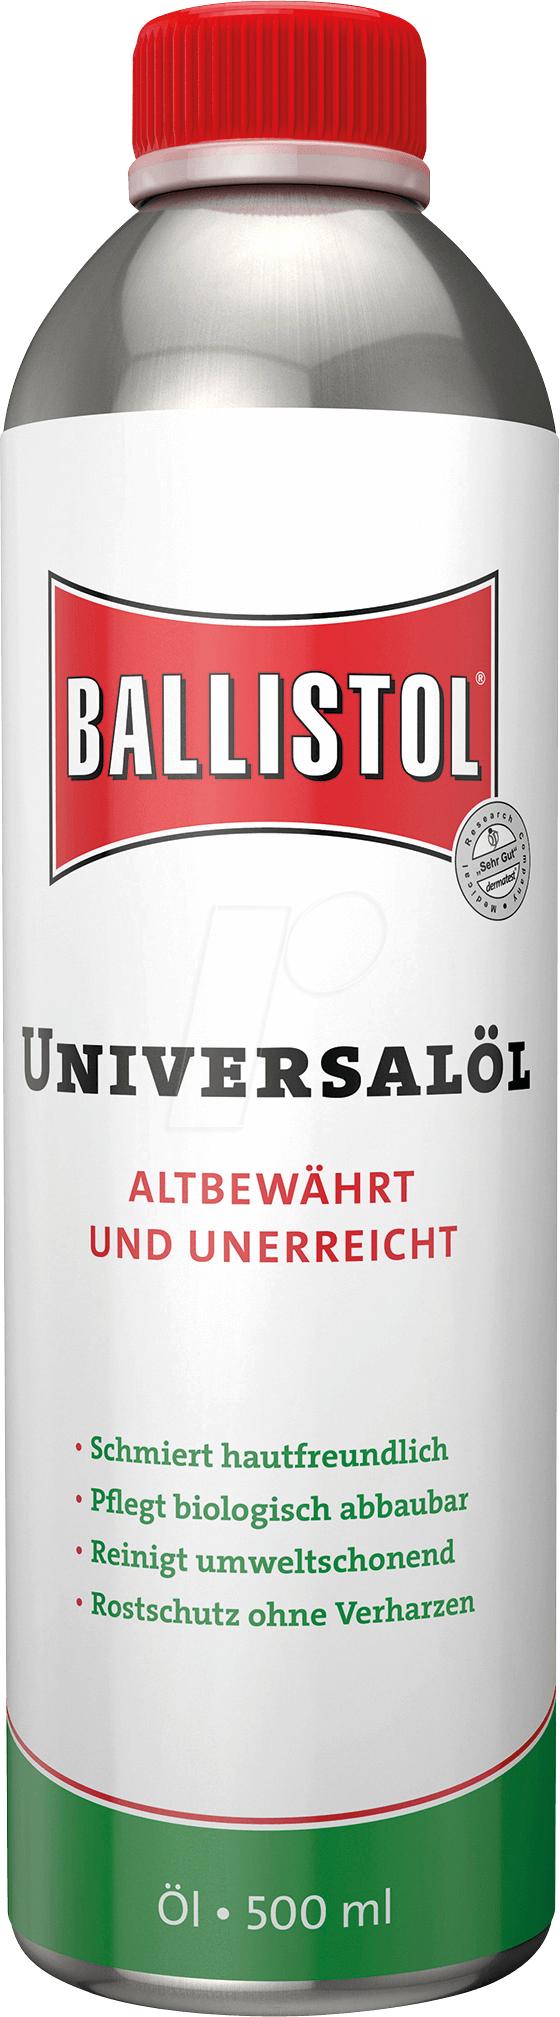 Ballistol - ballistol500mlolie